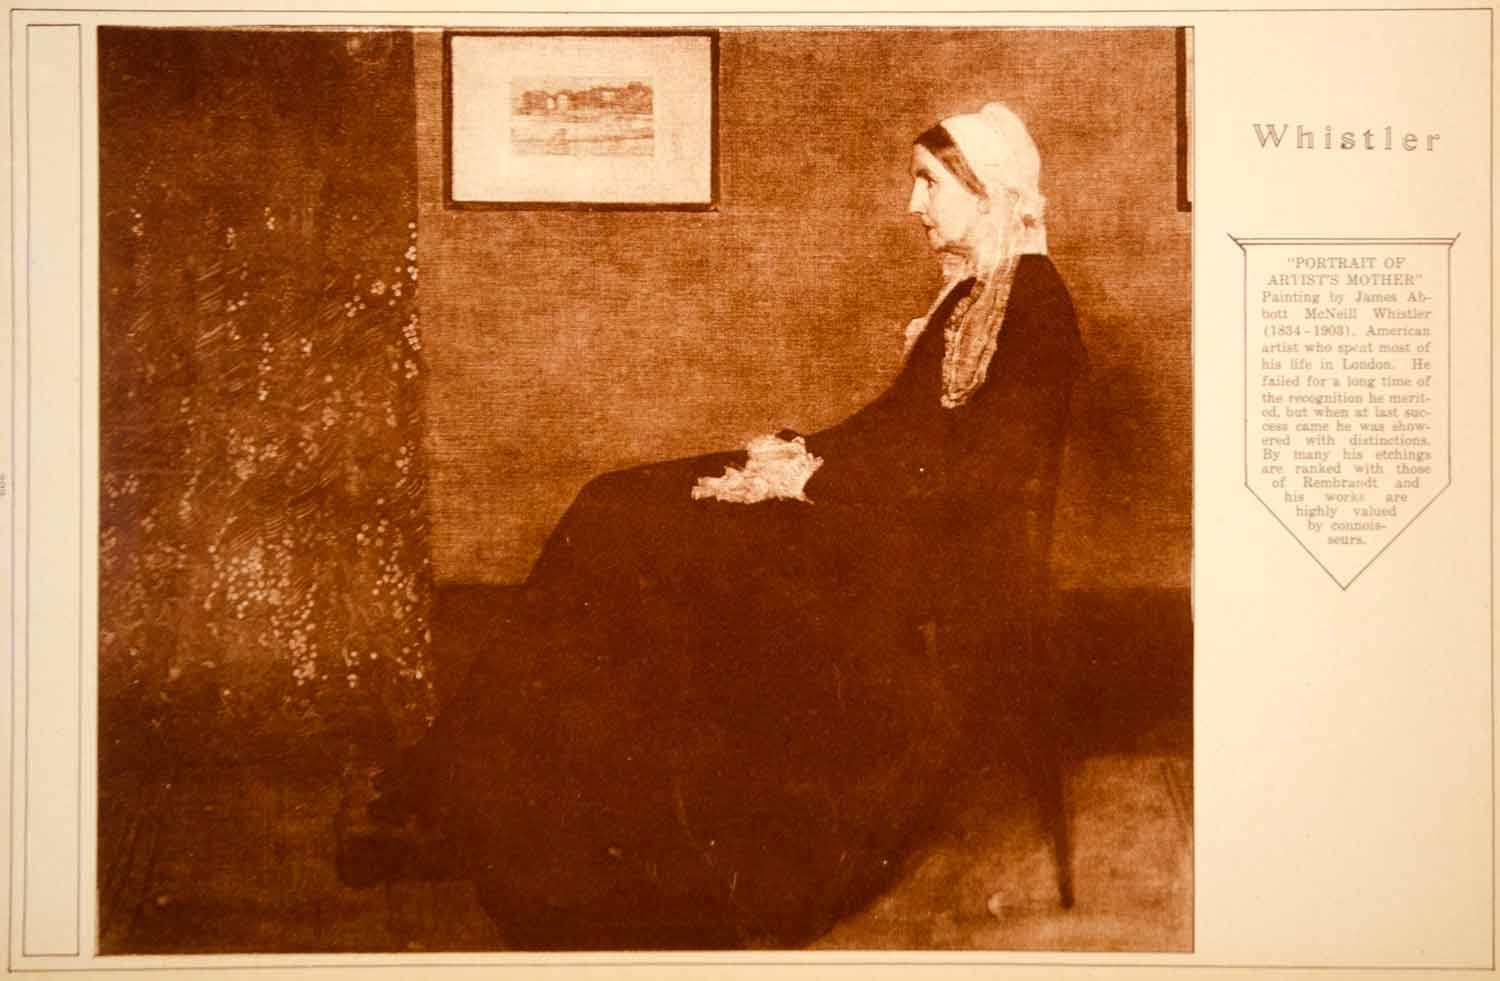 1923 Rotogravure James McNeill Whistler Whistler's Mother Portrait American Art